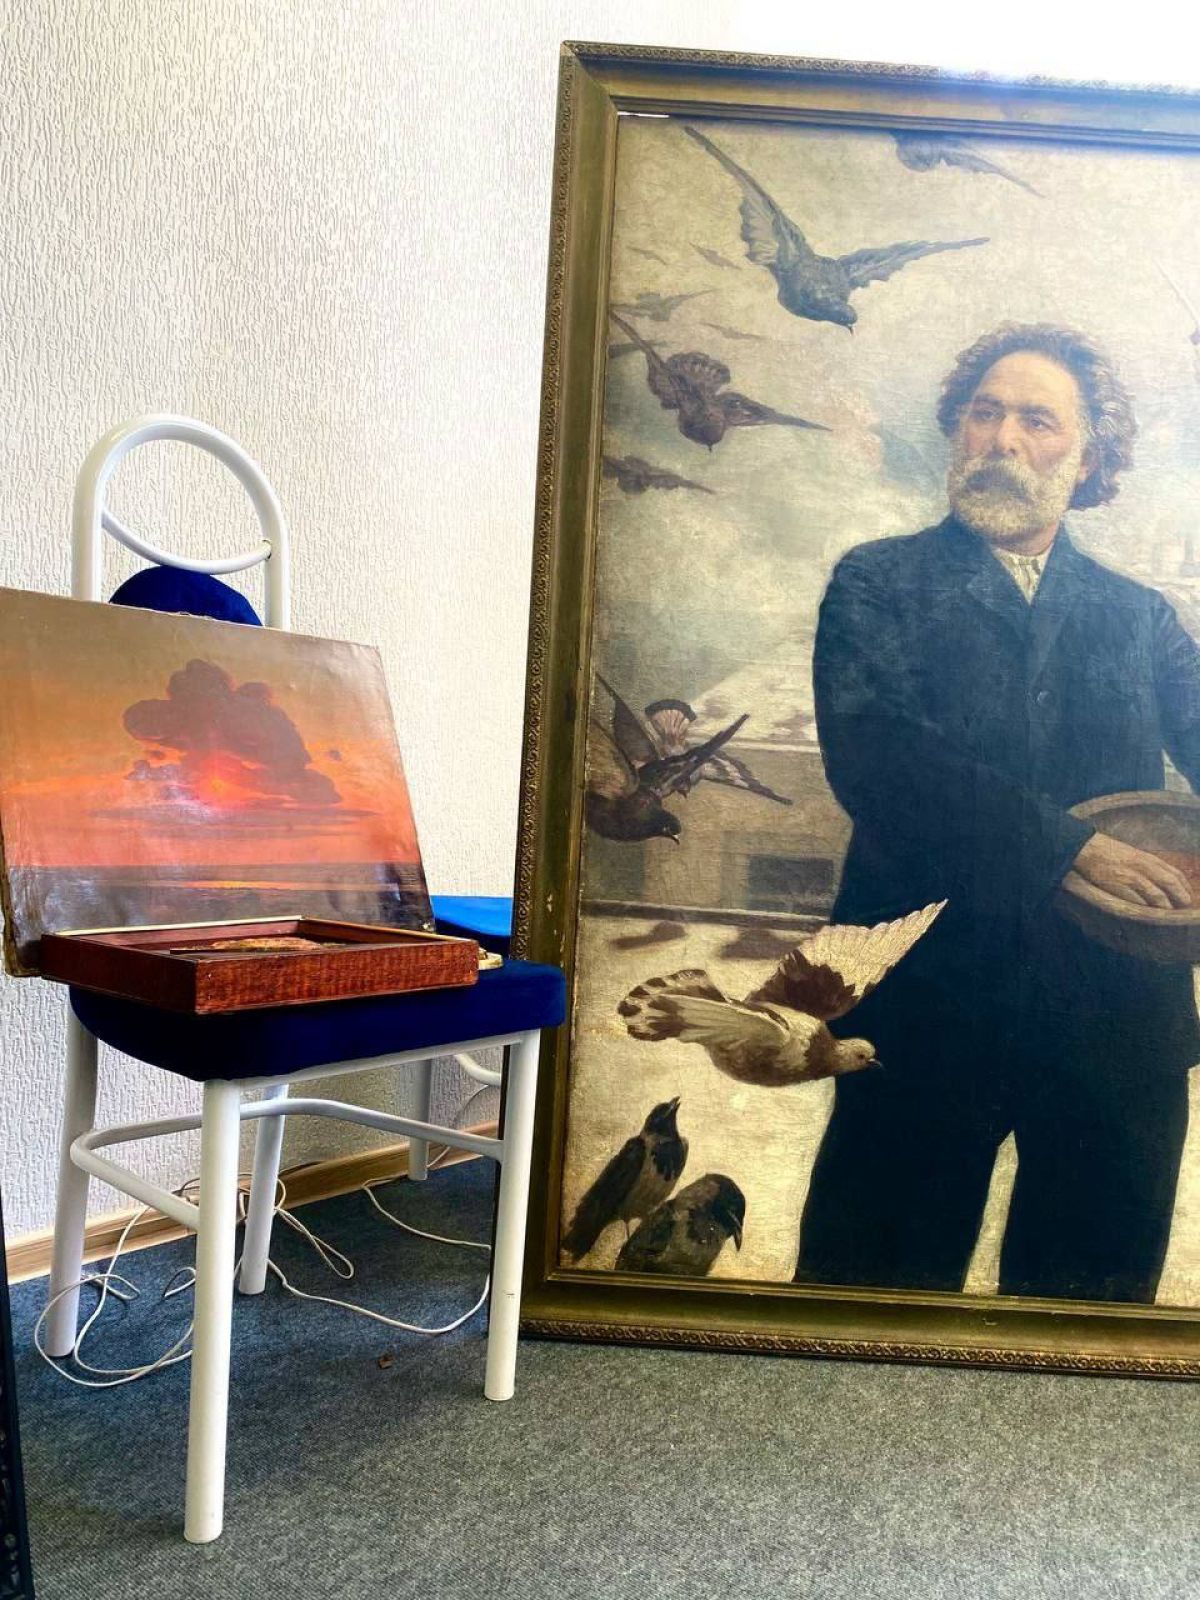 Forțele rusești ar fi confiscat peste 2.000 de opere de artă din muzeele din Mariupol, afirmă autoritățile din Ucraina (GALERIE FOTO)